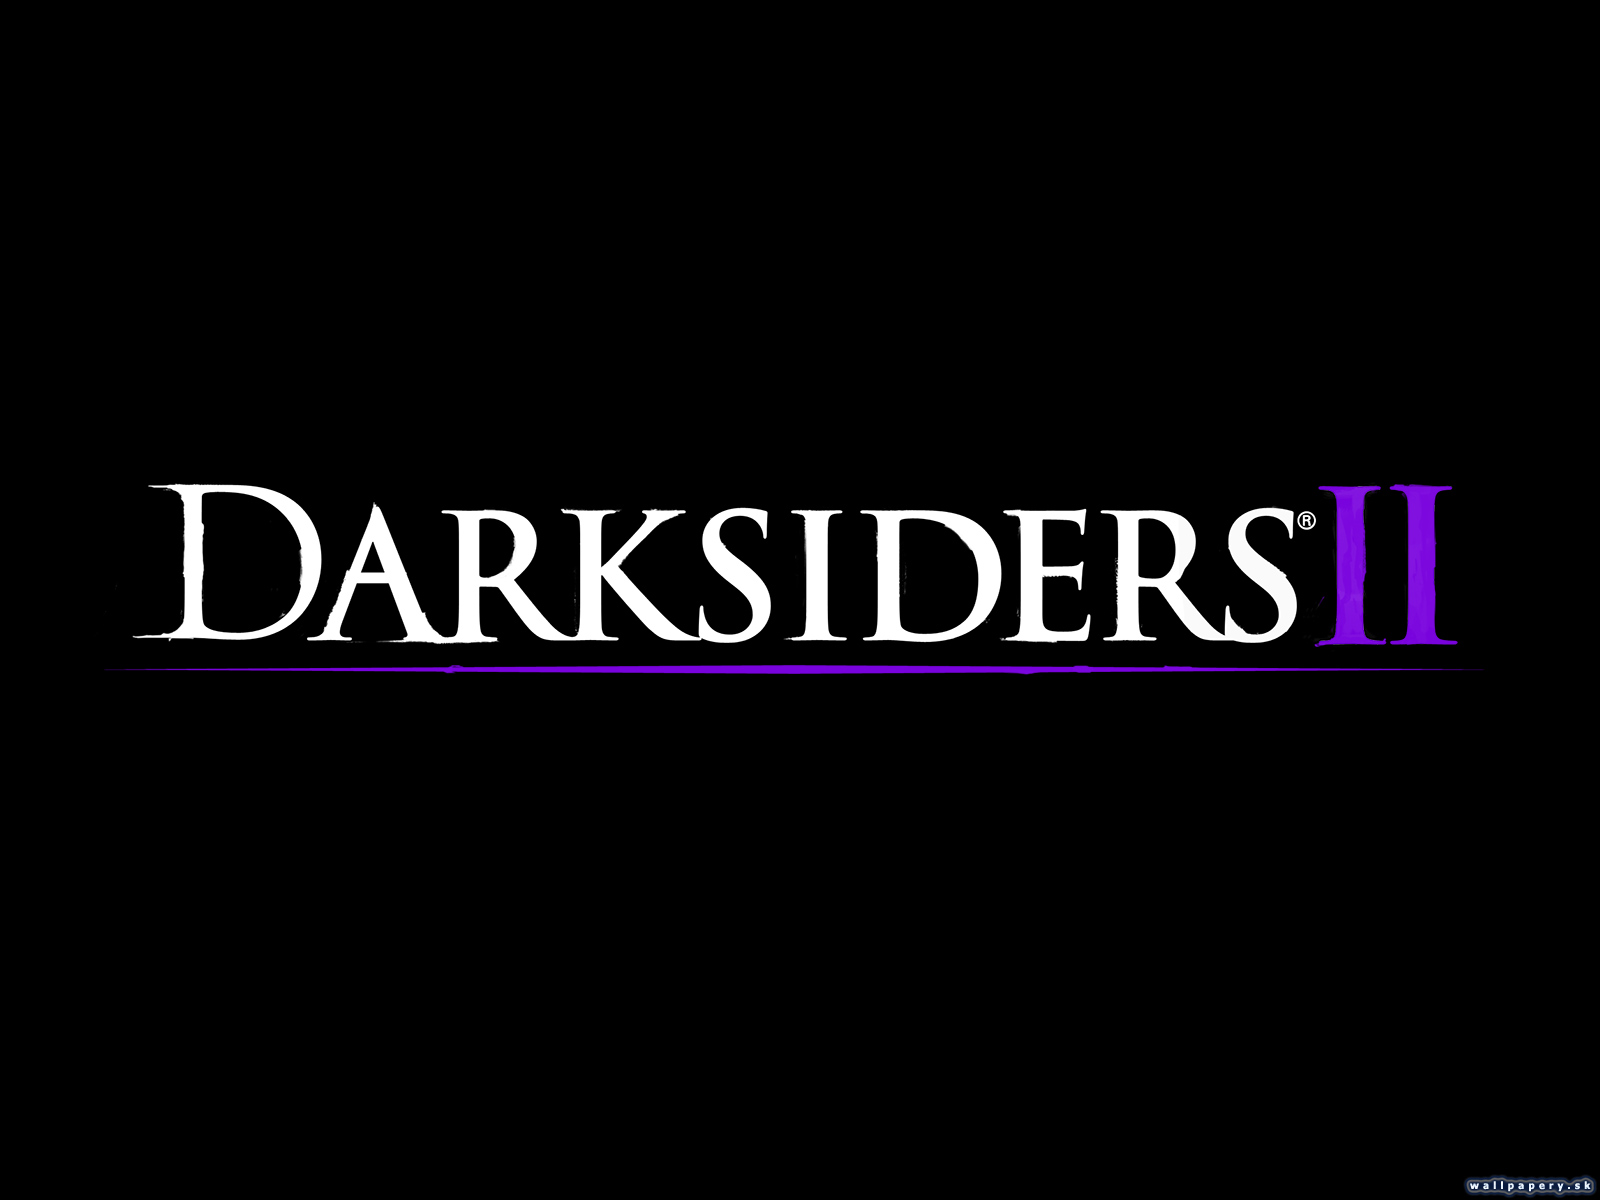 Darksiders II - wallpaper 8